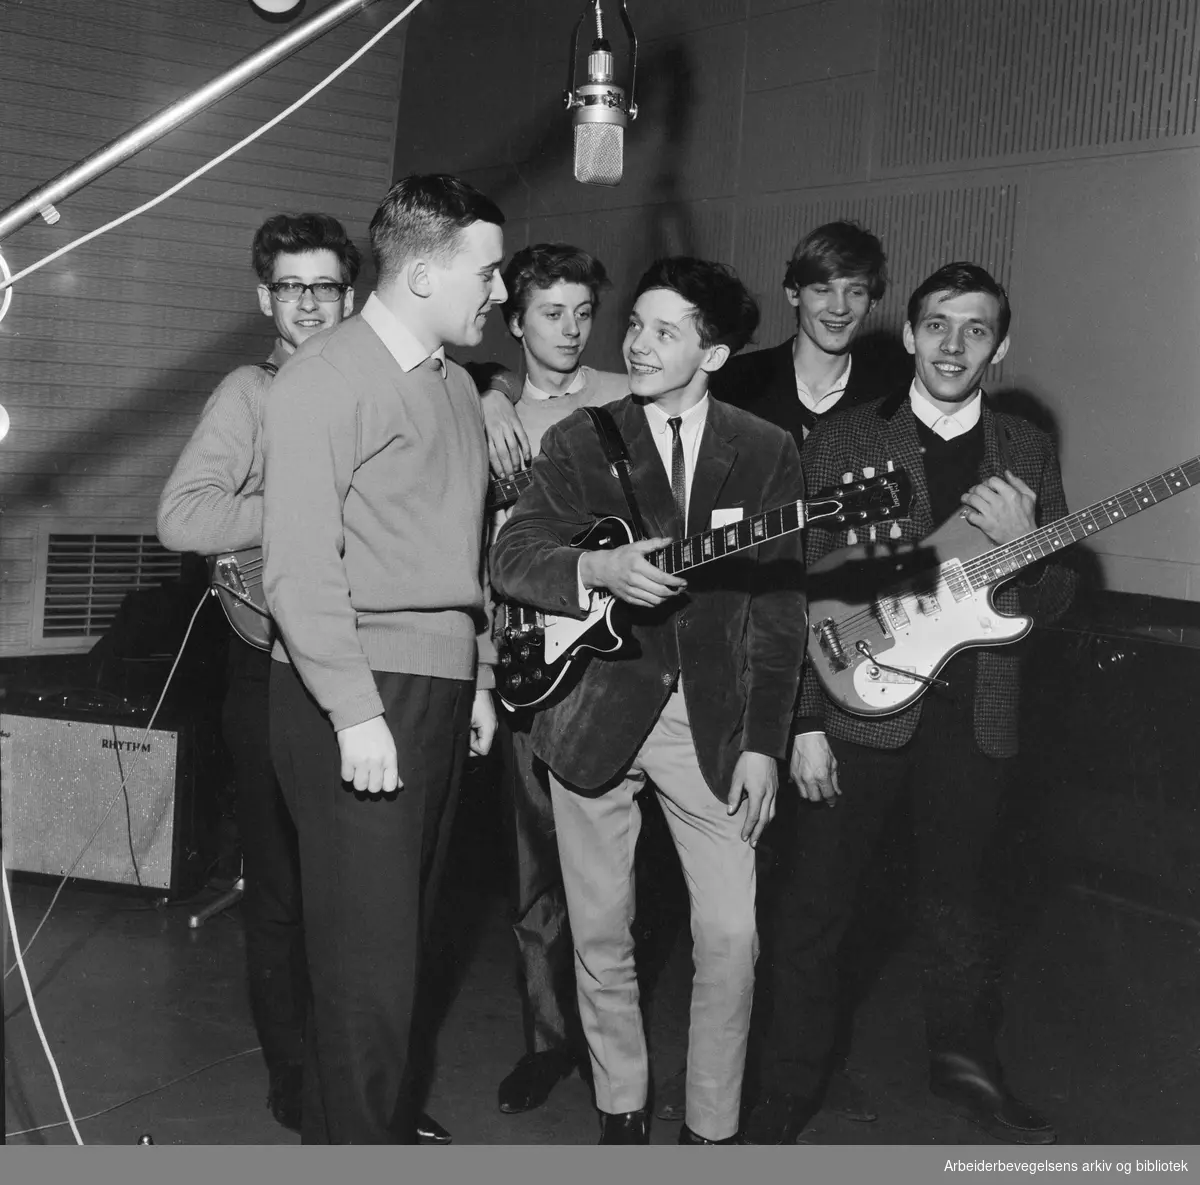 Den danske pop-gruppen The Thaps i studio på Marienlyst med NRK's Vidar Lønn-Arnesen. I midten står Ole Neumann, kjent som Lille Per i de danske Far til fire-filmene. Desember 1965.